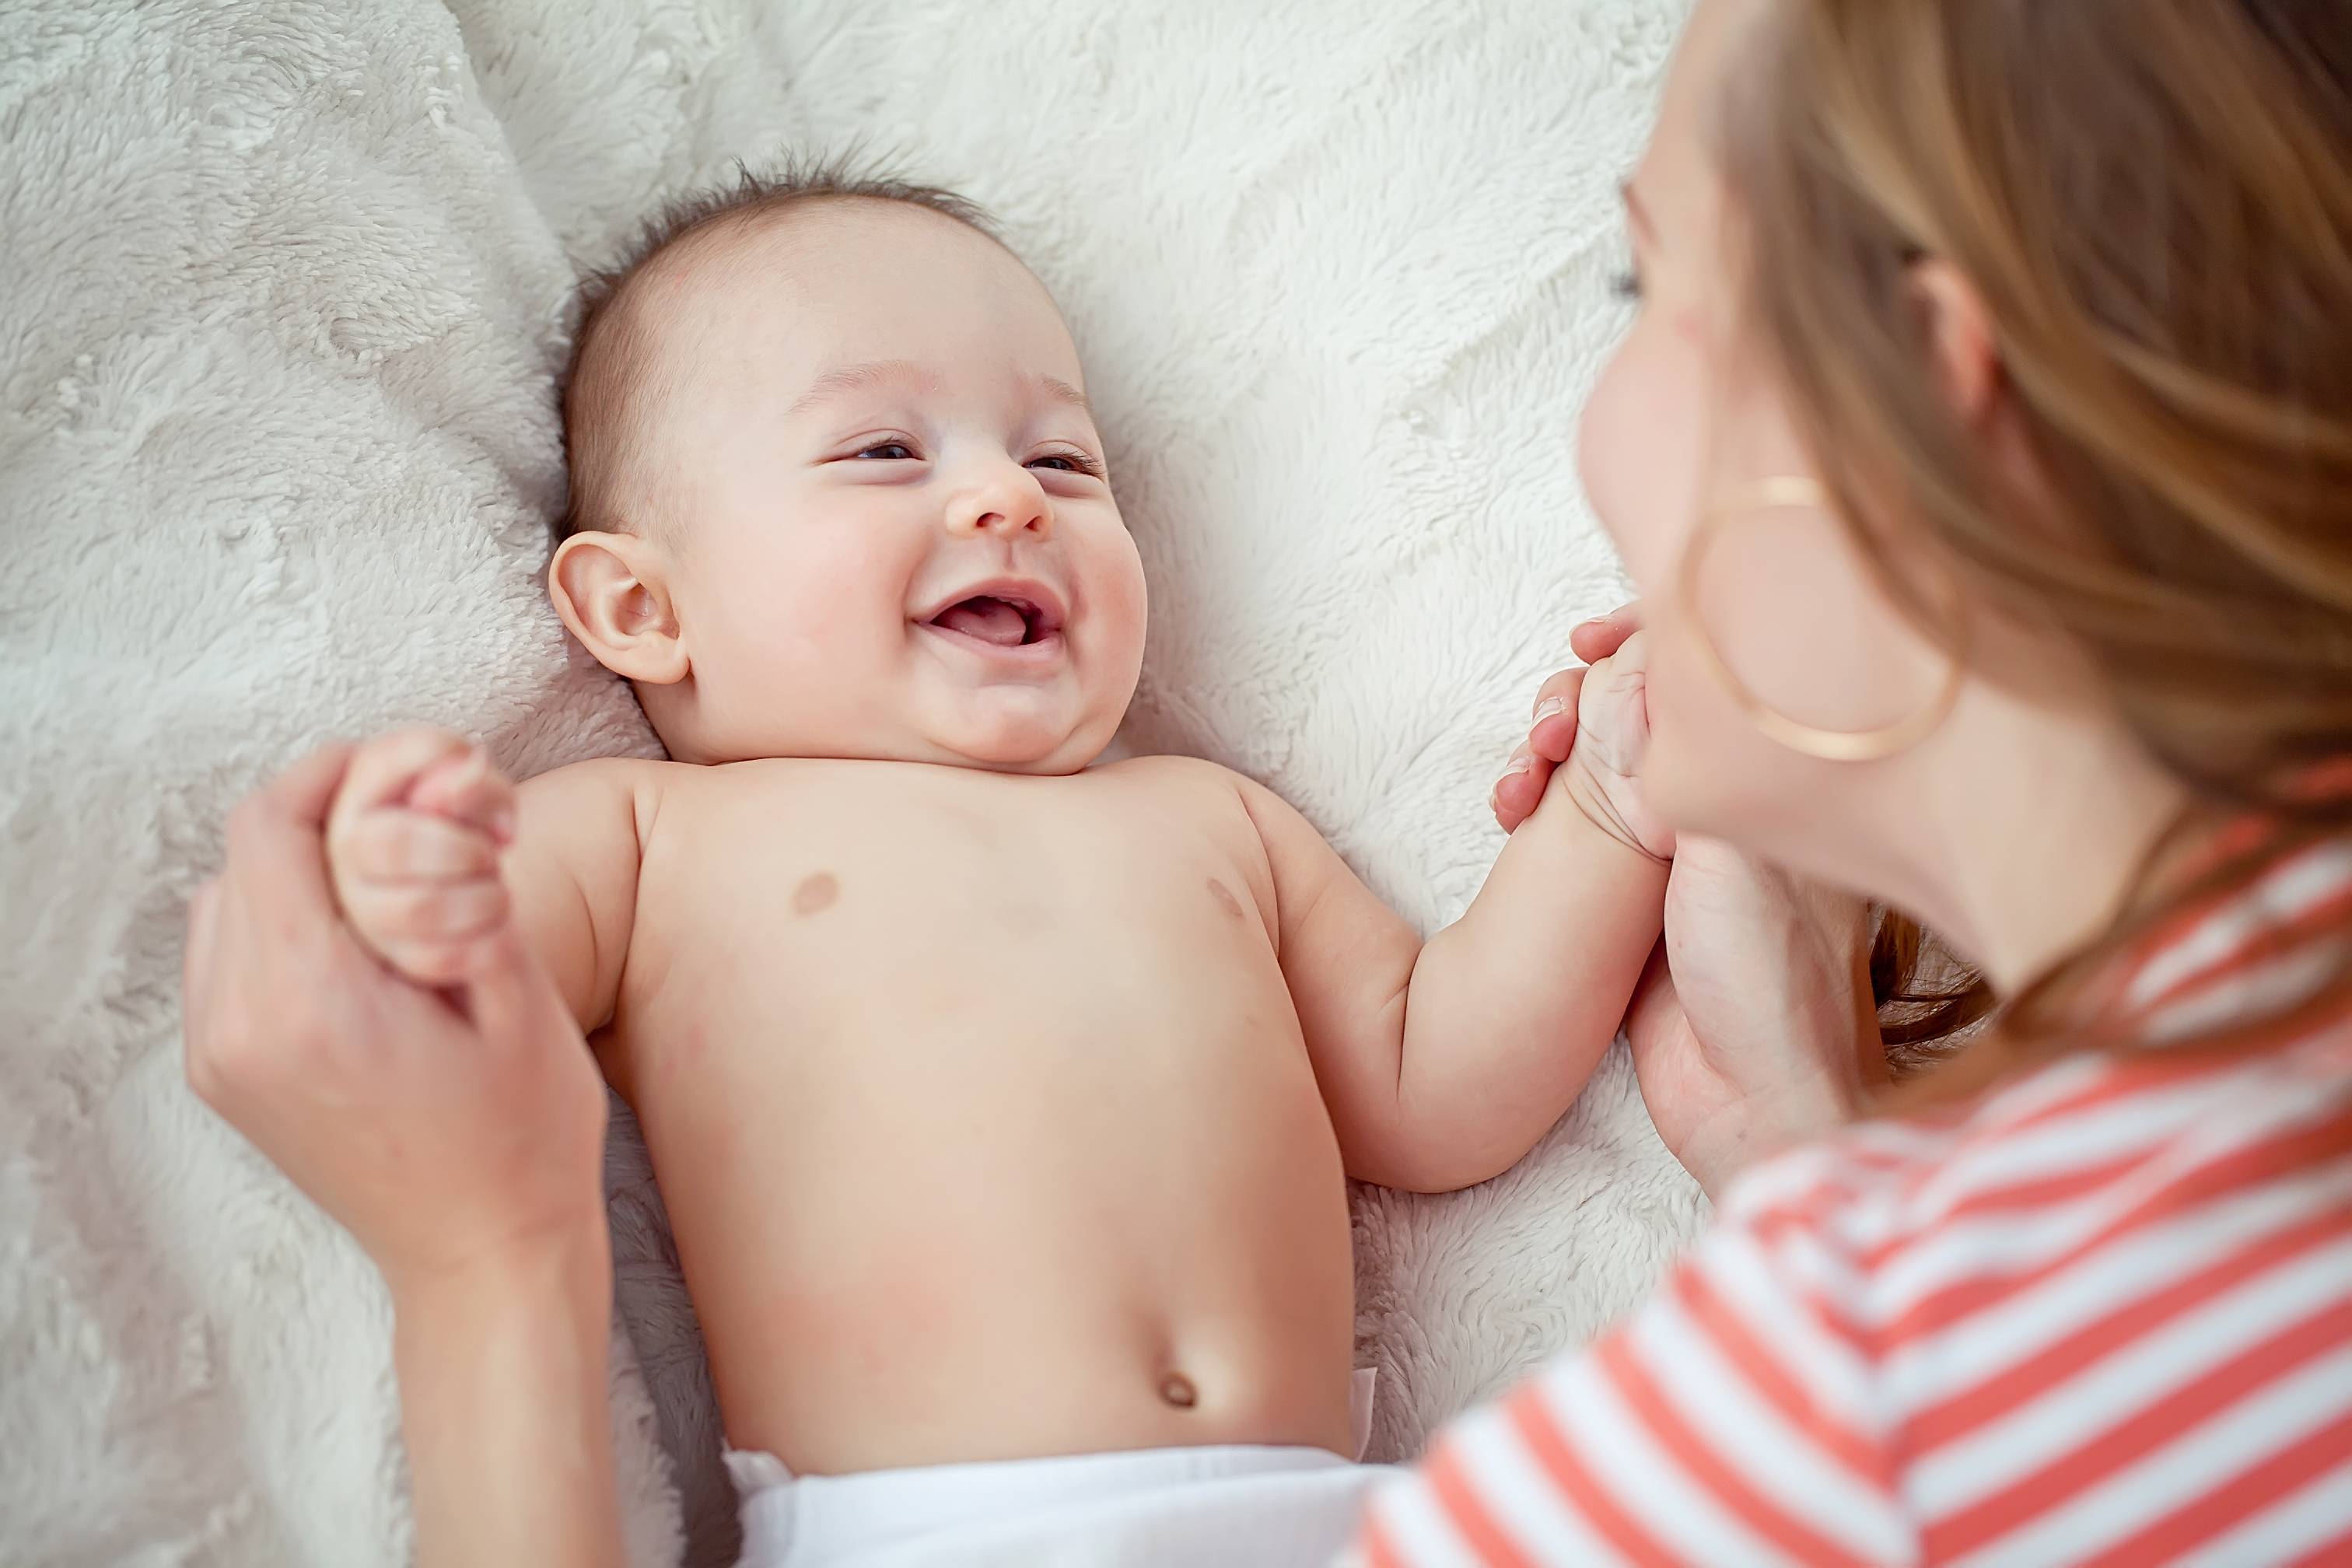 Когда ребенок начинает улыбаться: возрастные нормы и причины отклонений